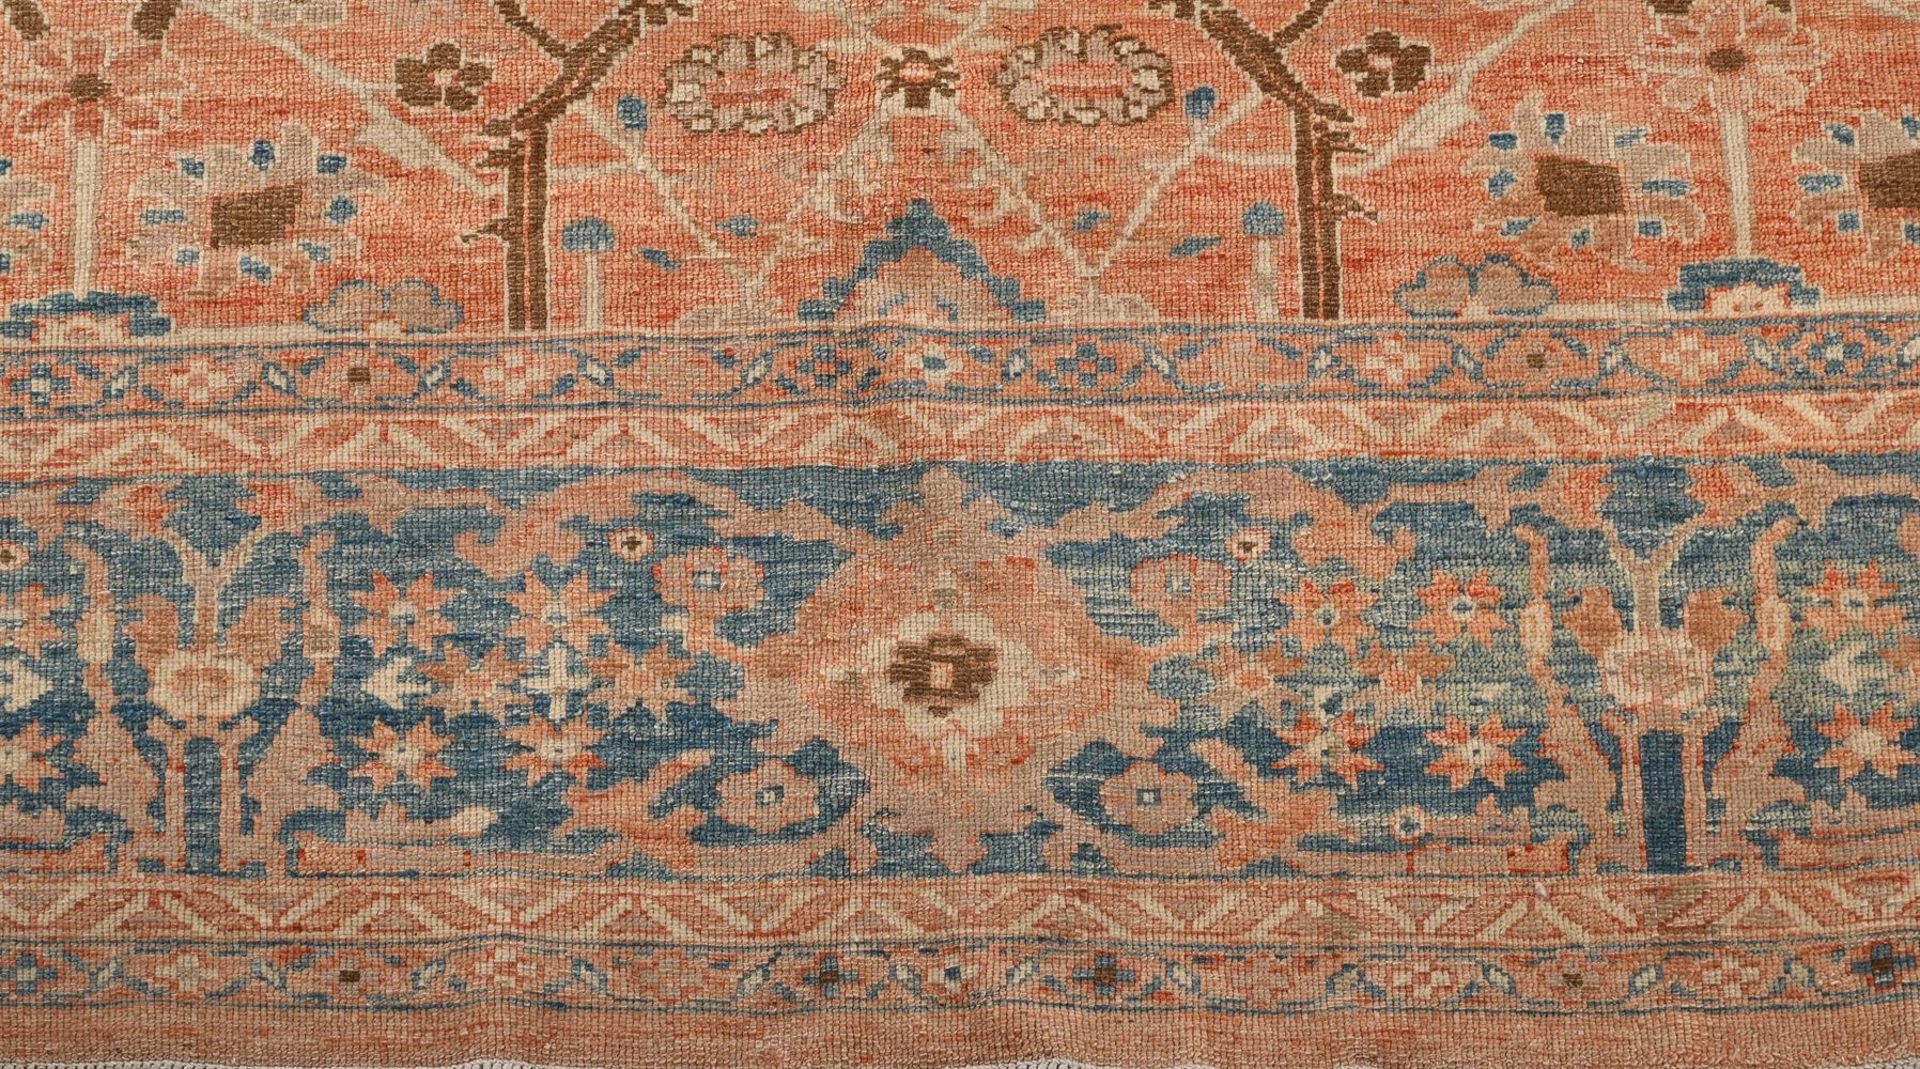 A TURKISH CARPET - Image 3 of 3